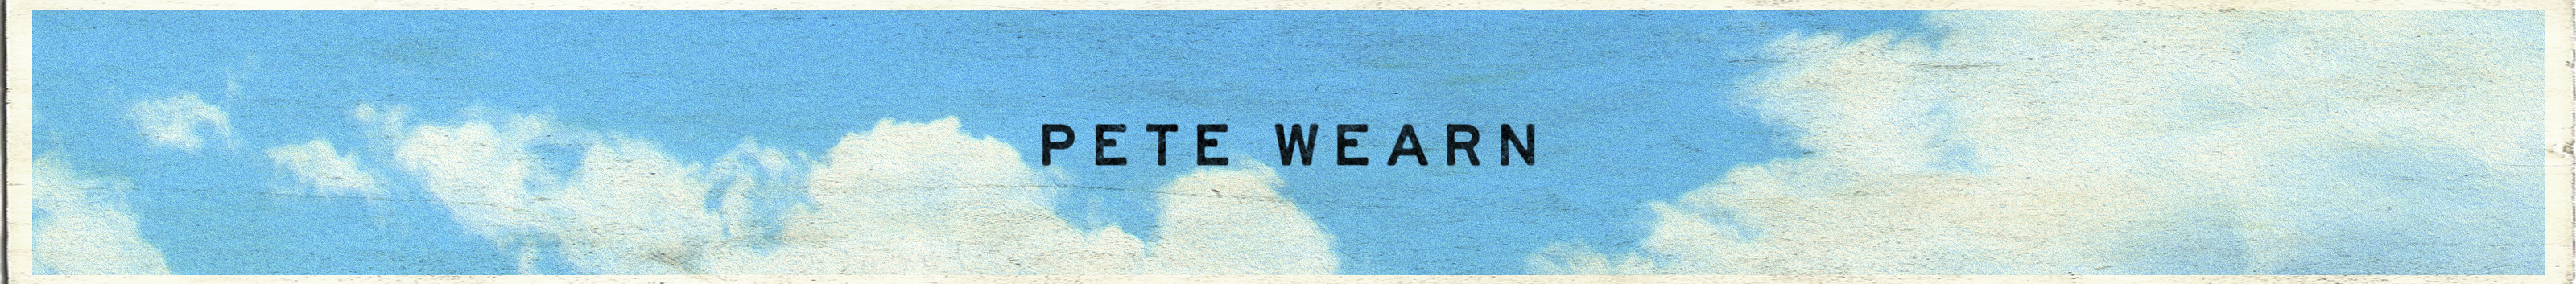 Pete Wearn's profile banner